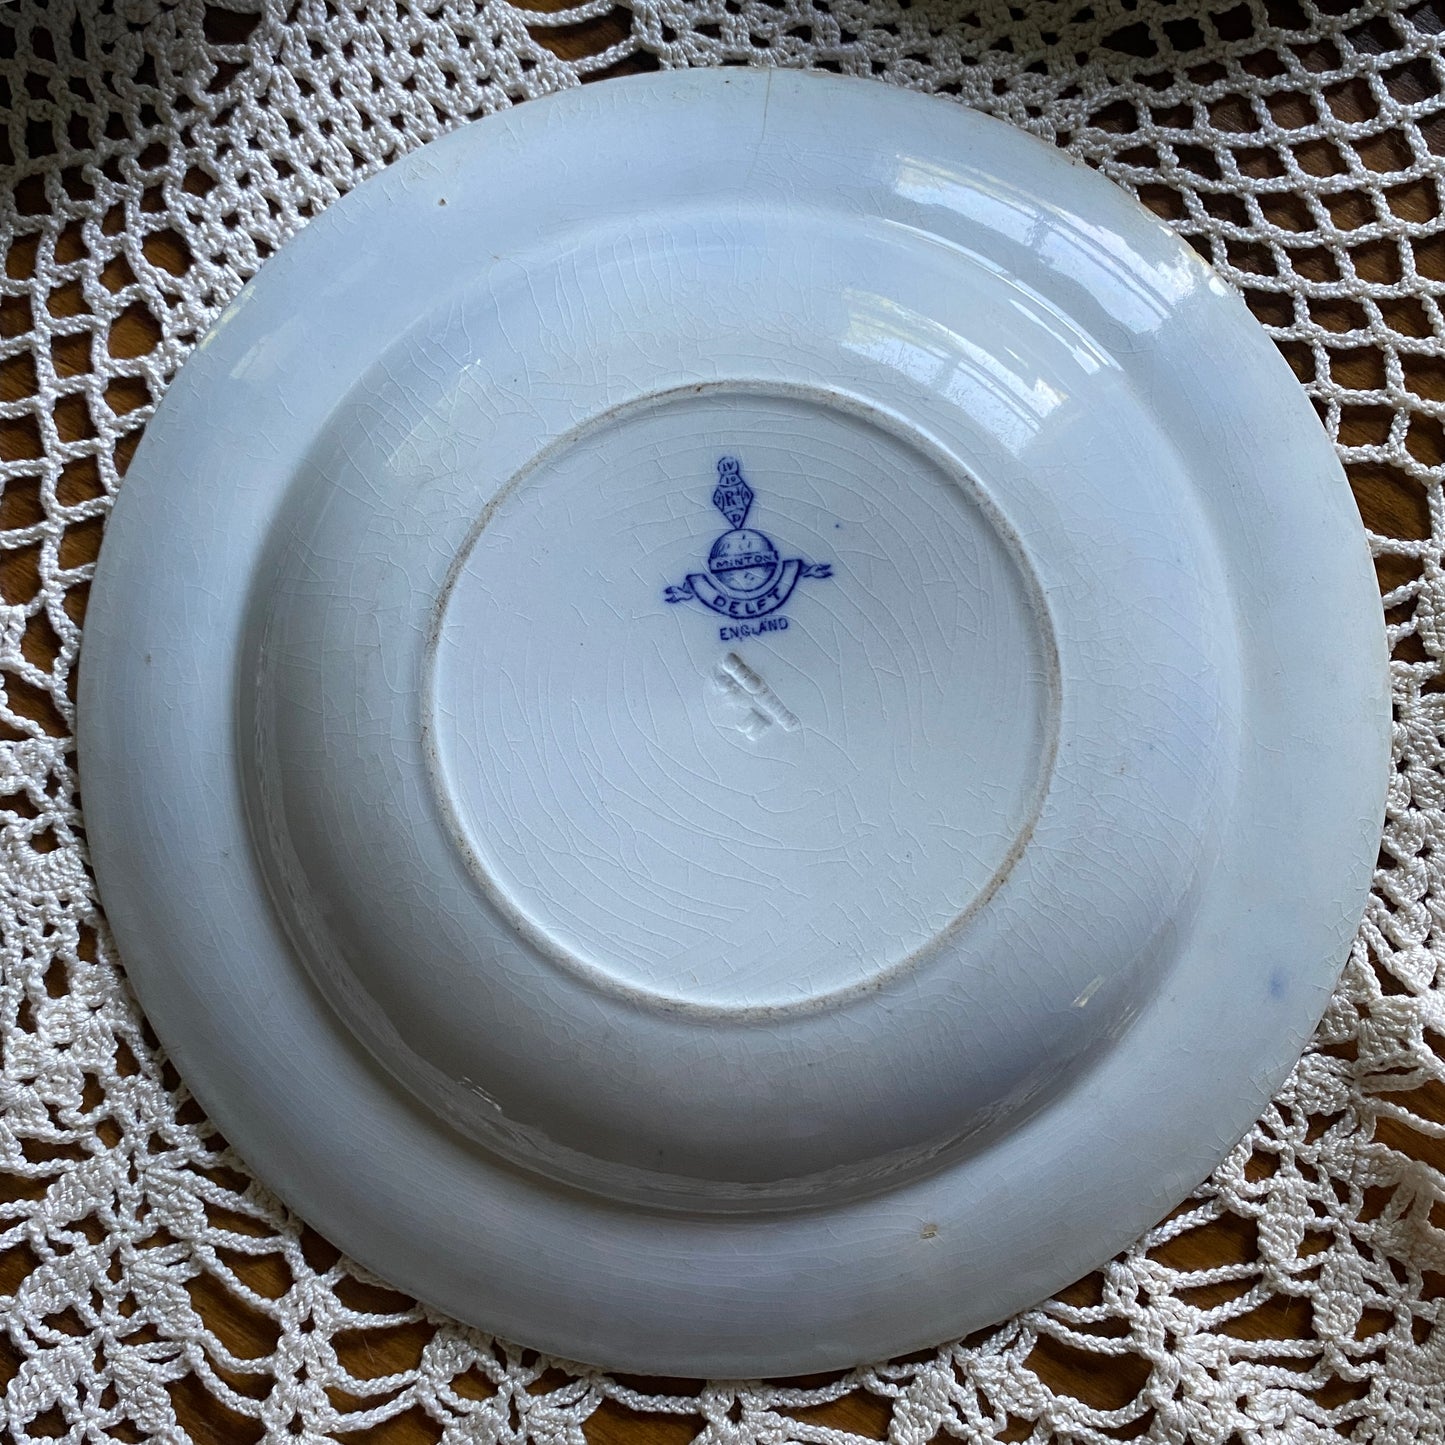 Delft Blue Soup Bowl by Minton